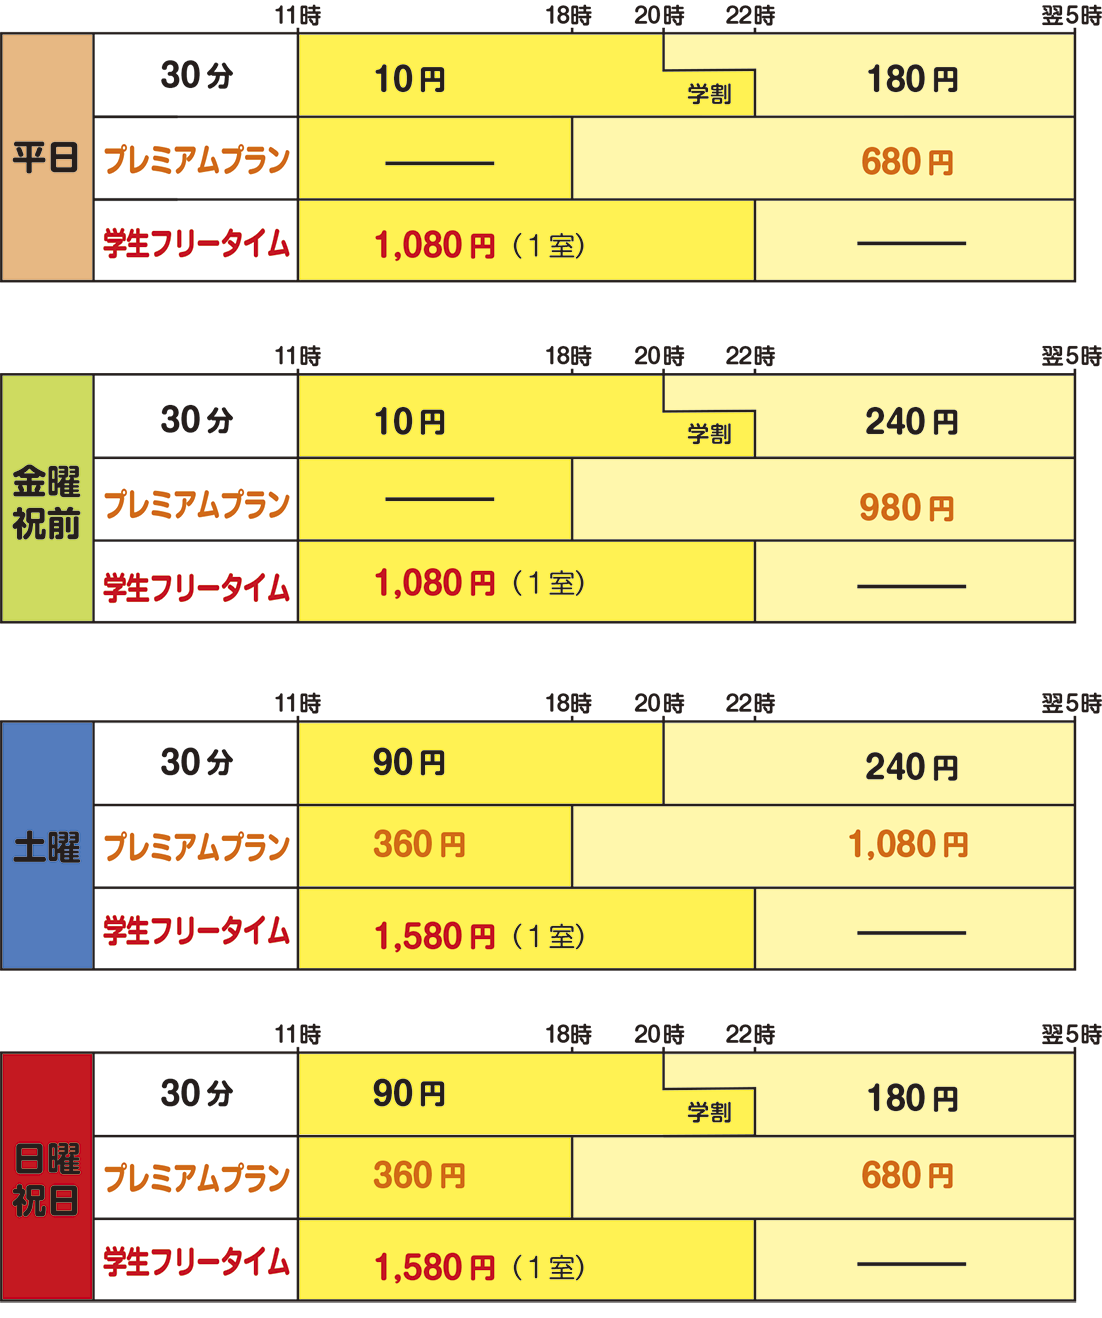 倉敷インター店のカラオケ料金表